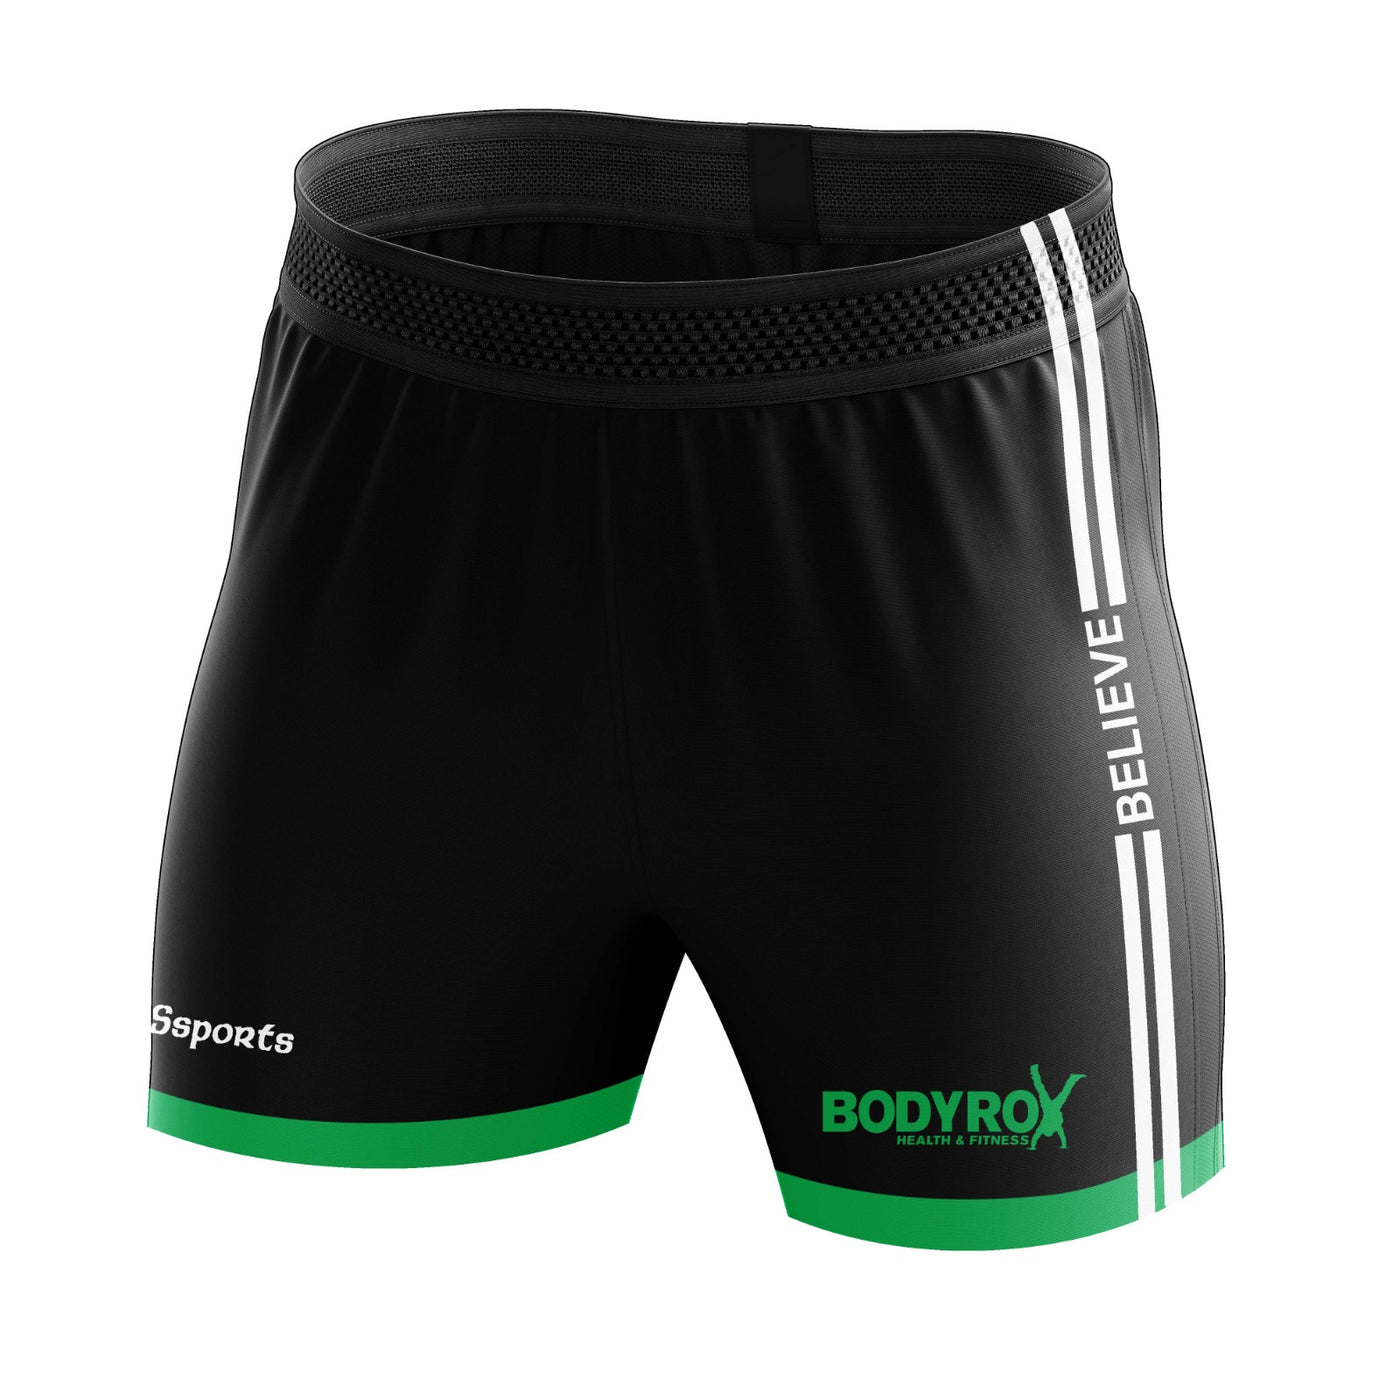 Bodyrox Health & Fitness - Shorts